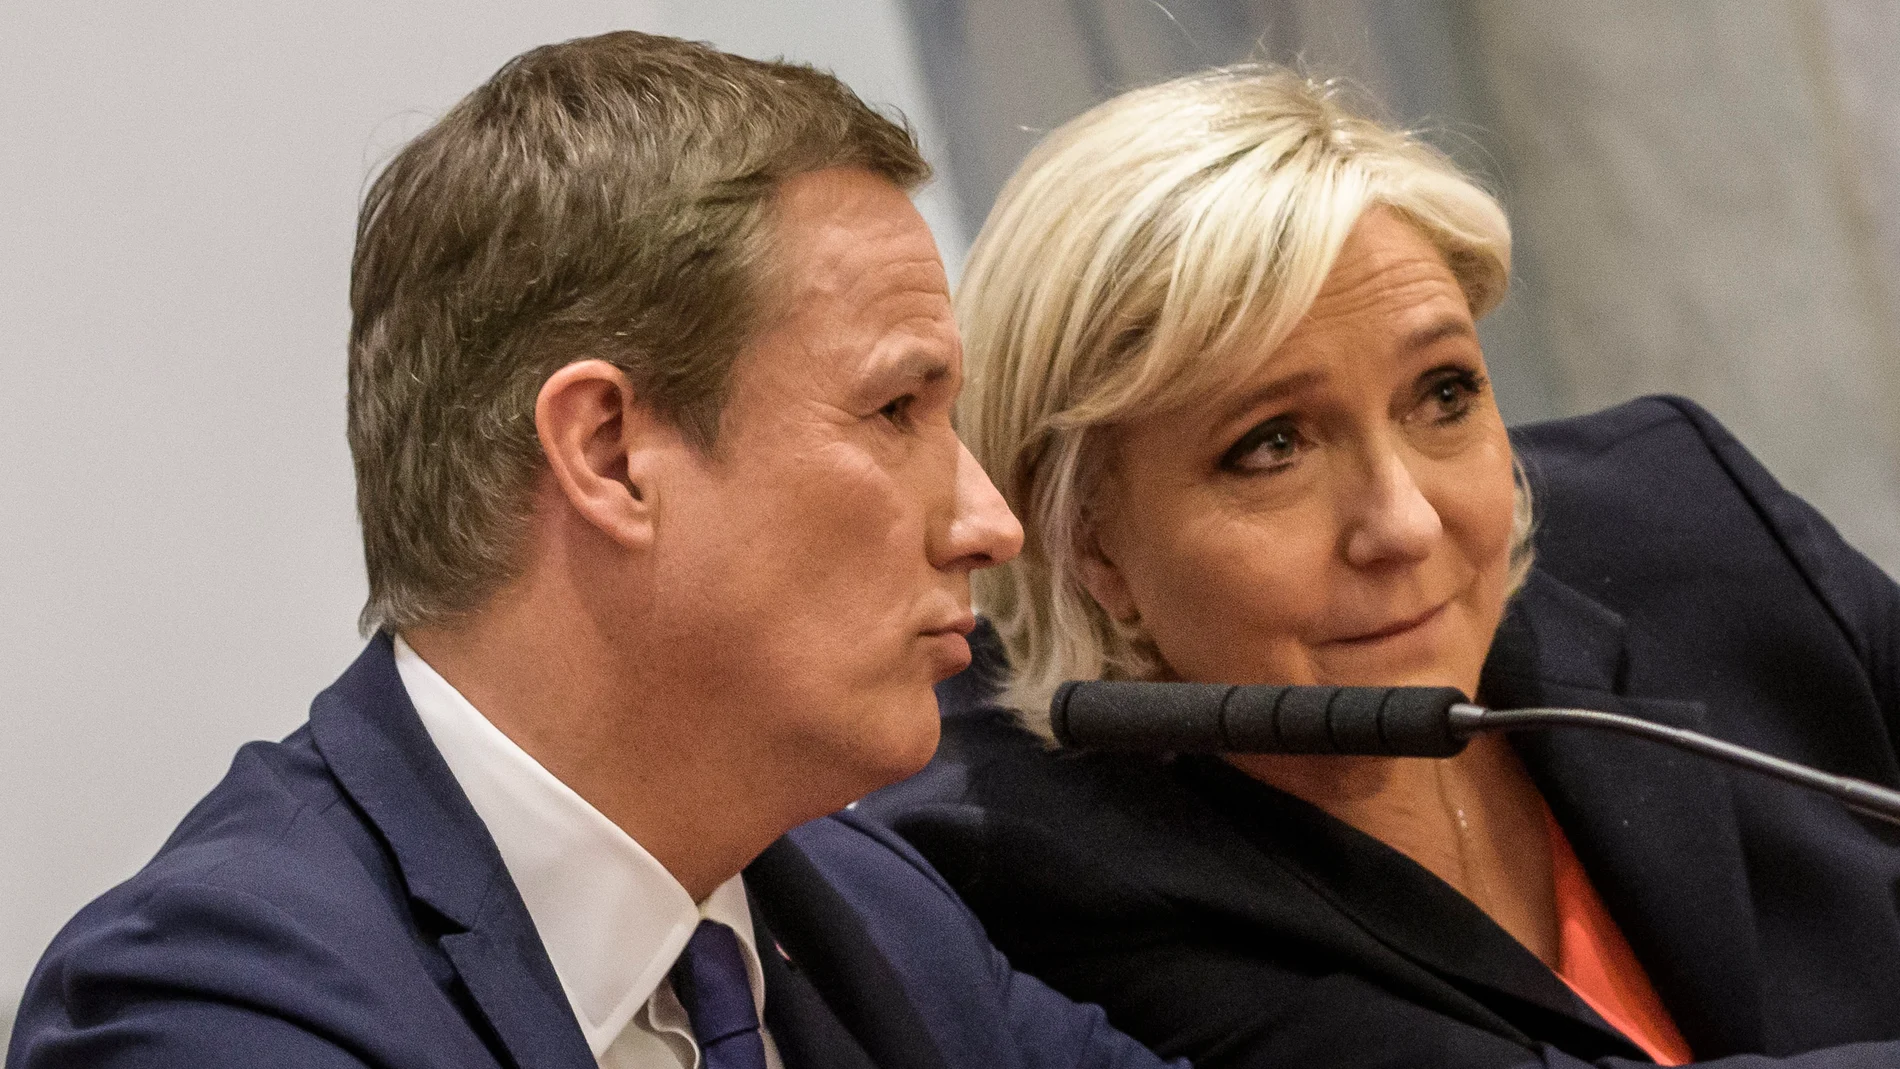  La ultraderechista Marine Le Pen junto al eurófobo Nicolas Dupont-Aignan en París